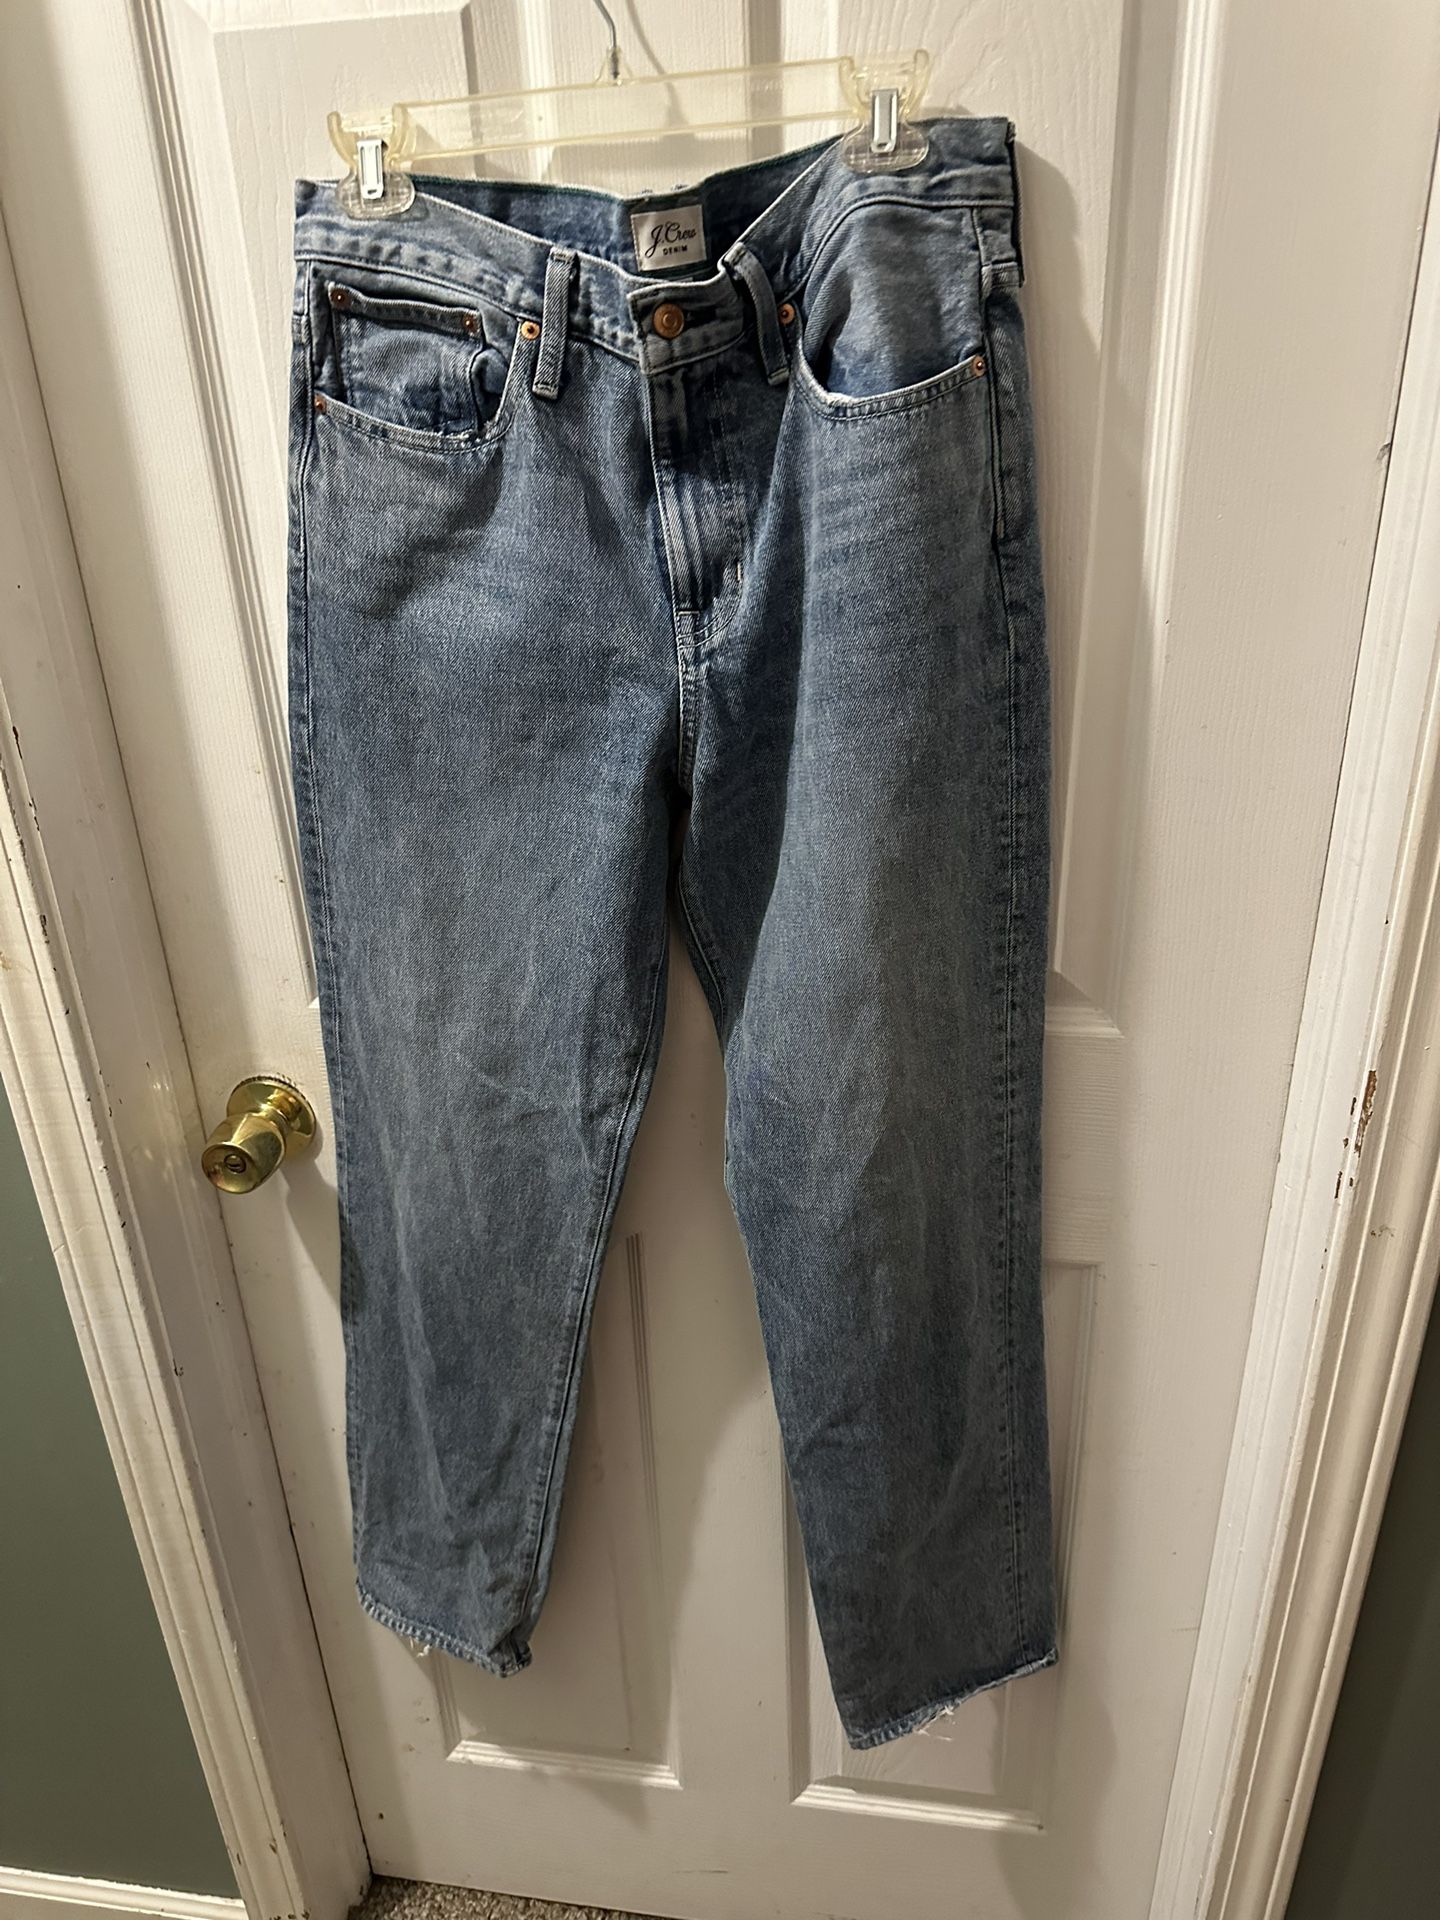 New J Crew Slouchy Boyfriend Jeans Size 28X31 Medium Wash Distressed Retro Nice